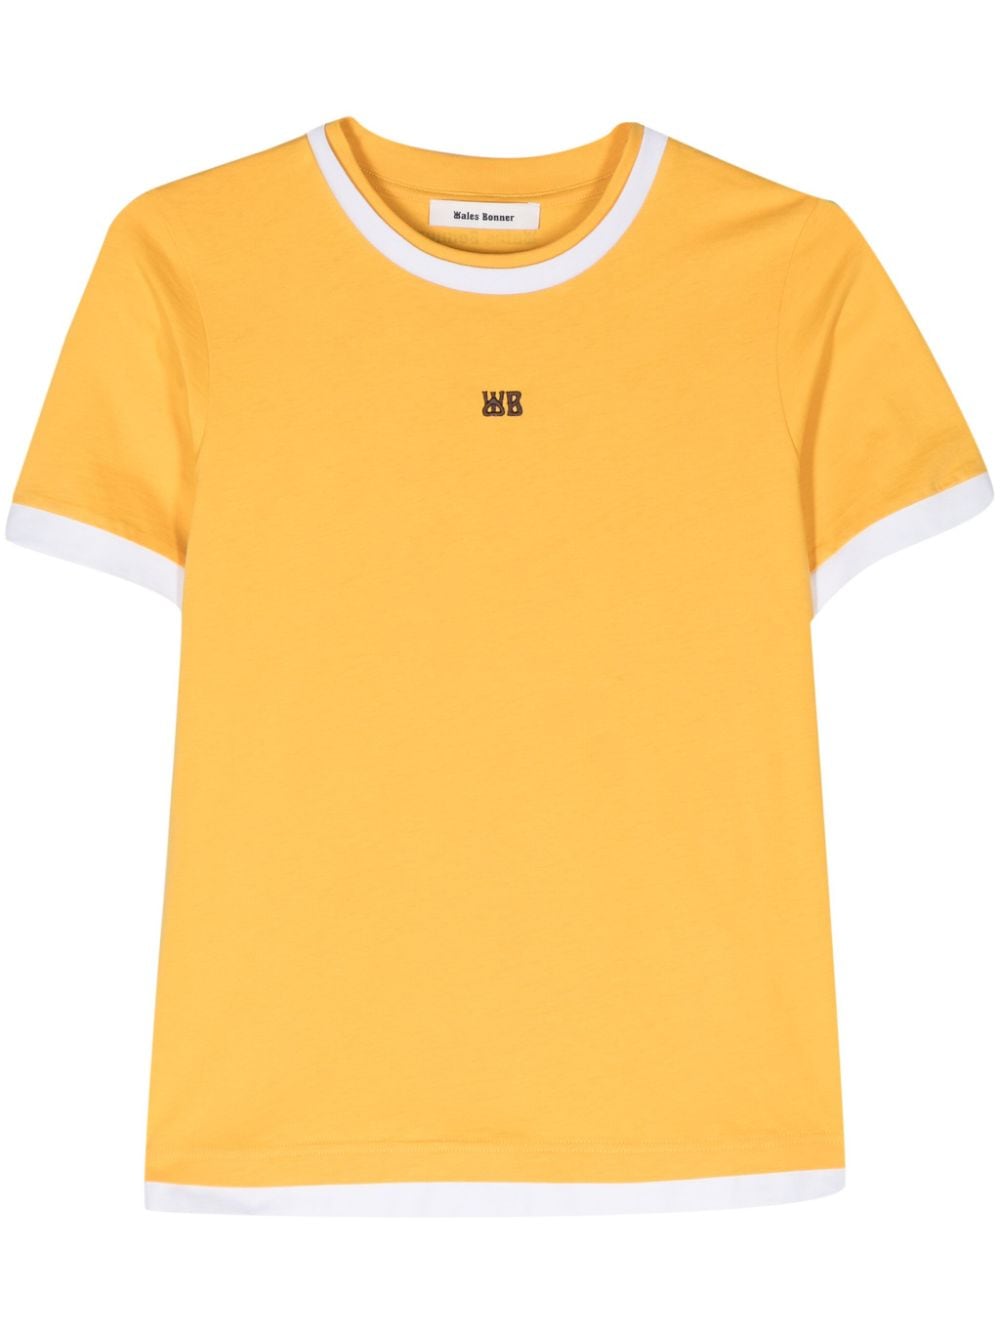 Wales Bonner Horizon T Organic Cotton T-shirt In Yellow